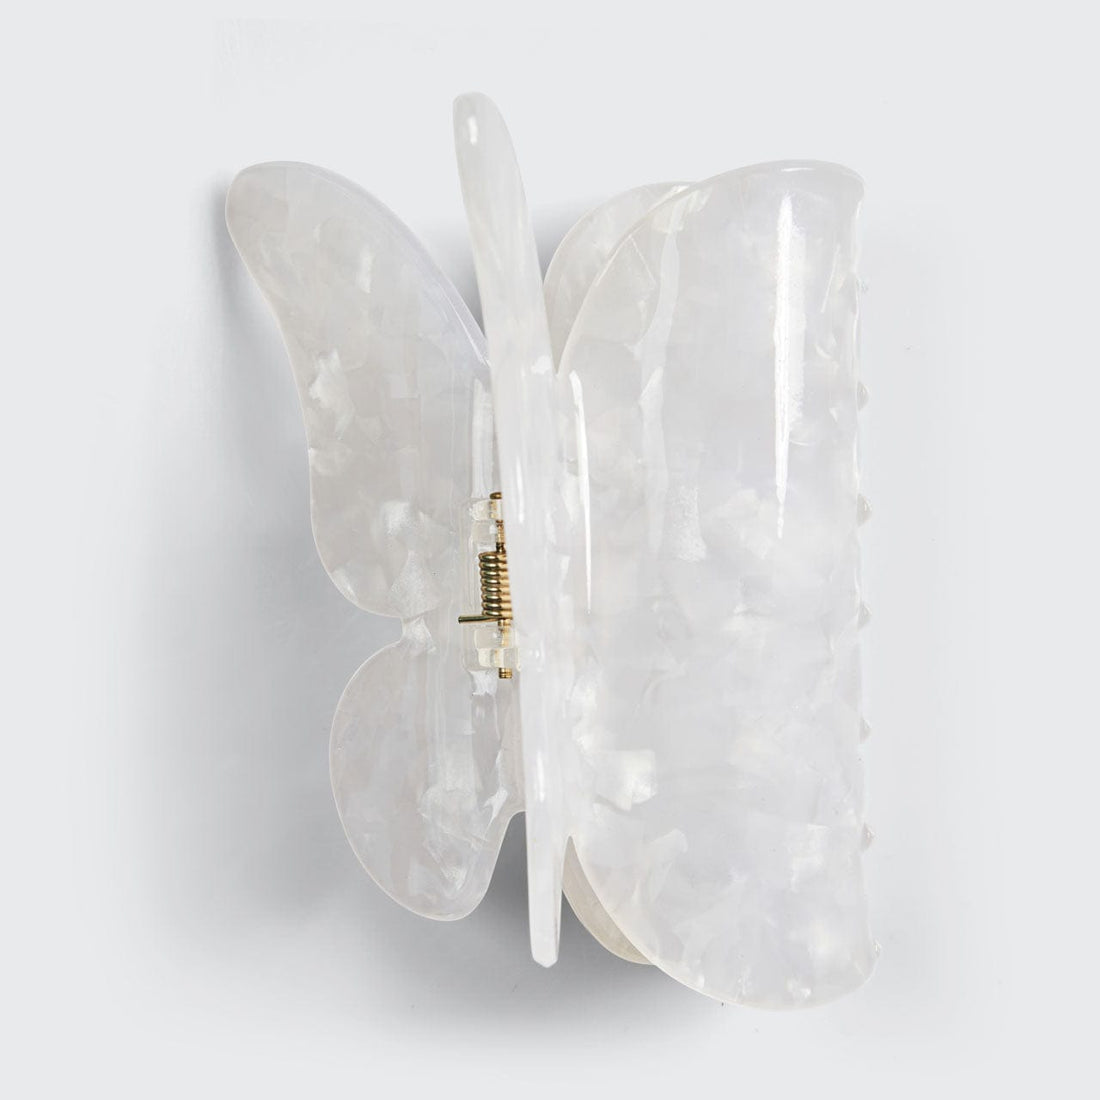 Clip per artigli ecologica - Farfalla bianca